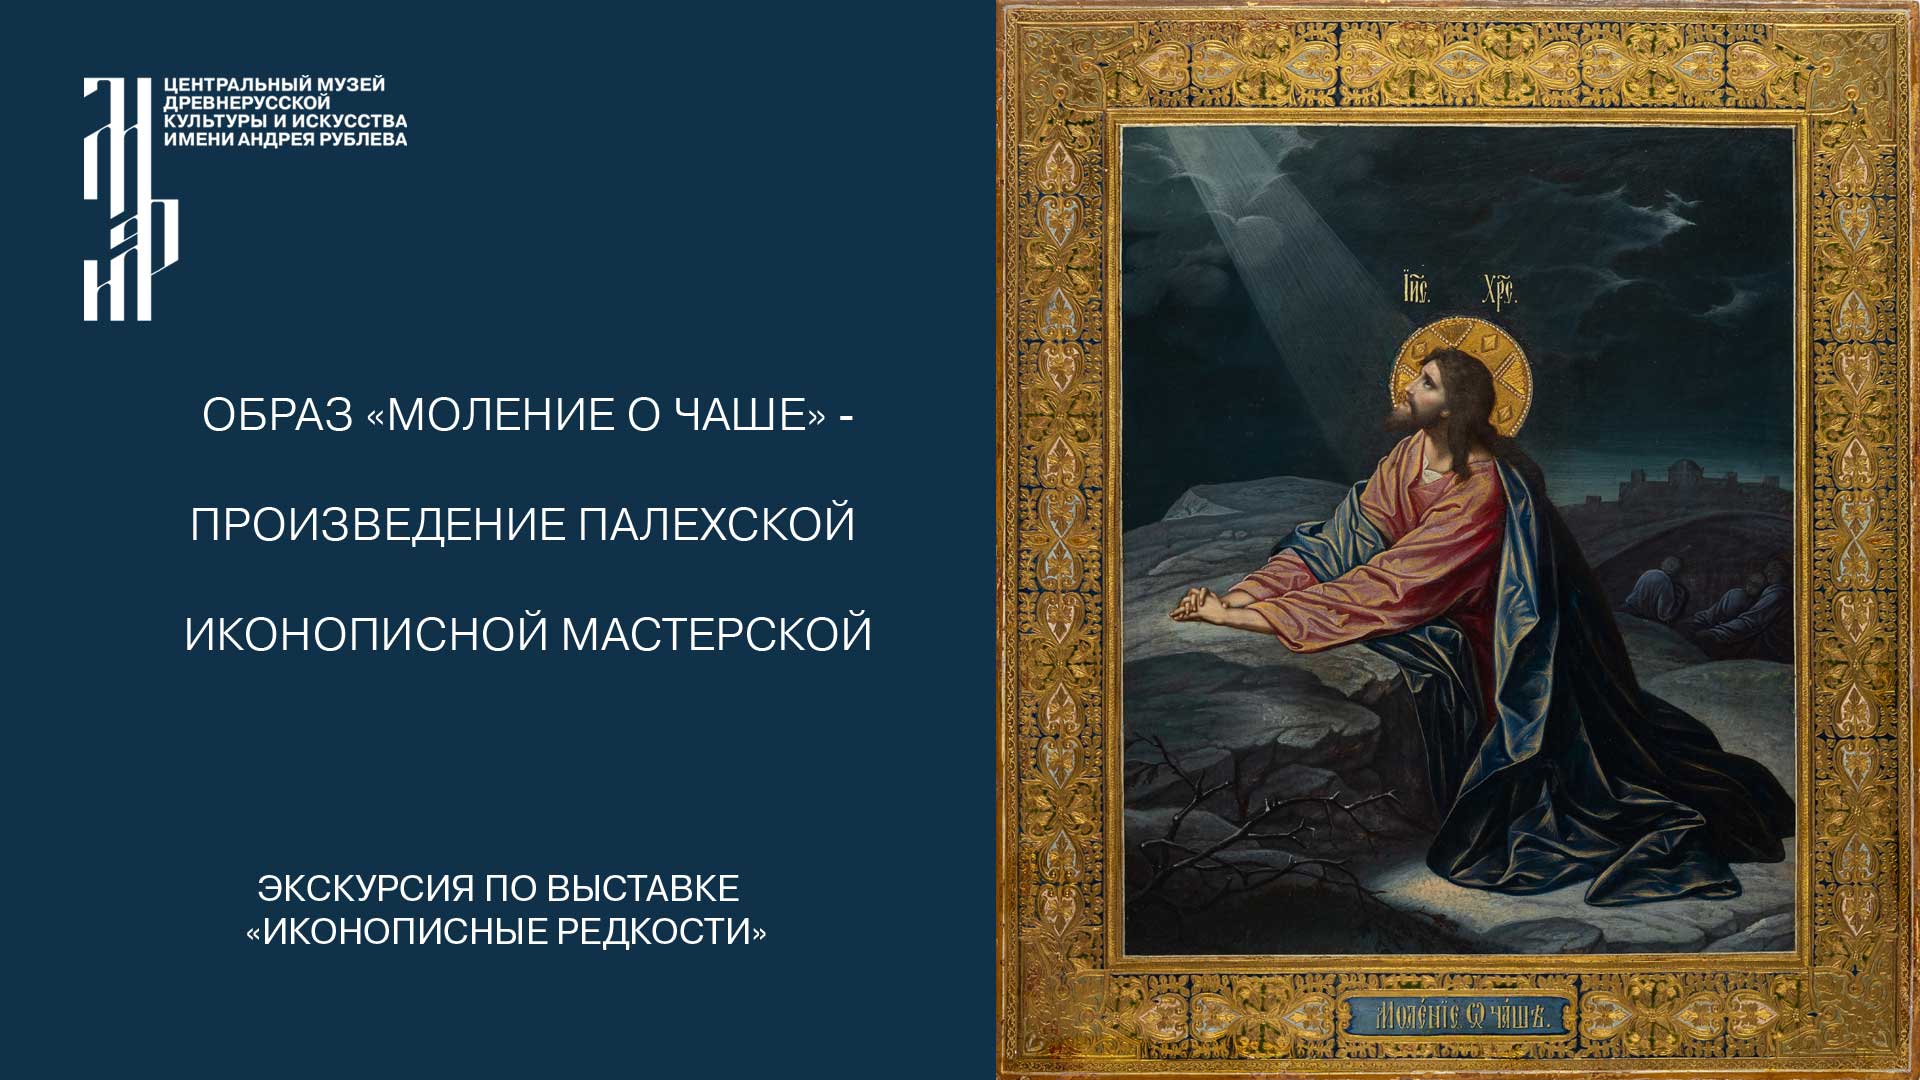 Образ «Моление о чаше» - произведение палехской иконописной мастерской. Музей имени Андрея Рублева